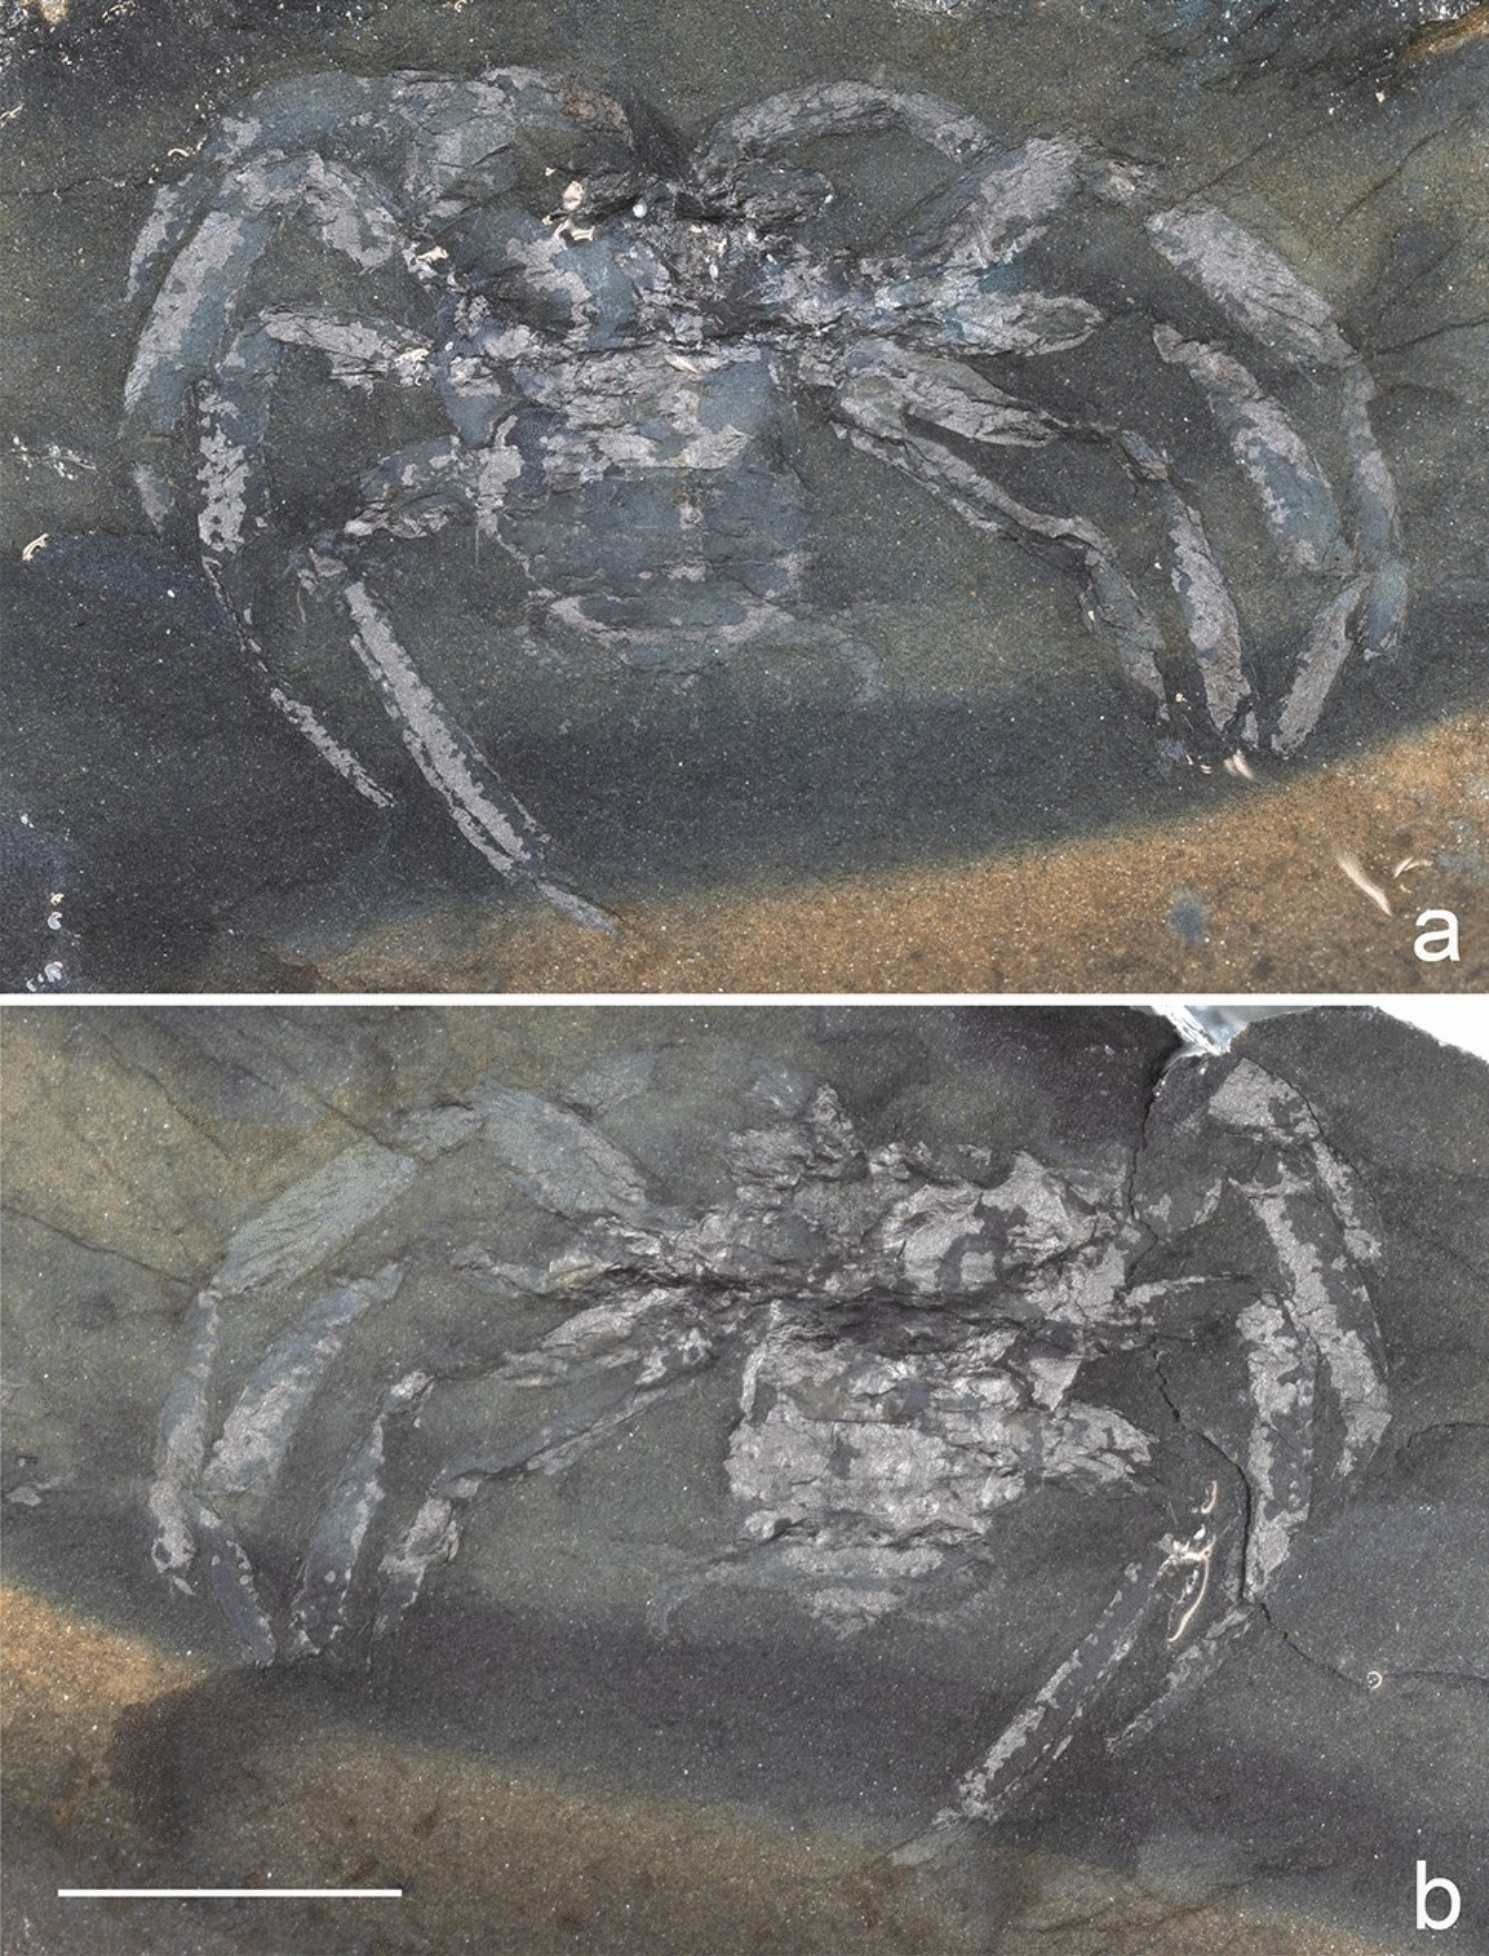 Arthrolycose wolterbeeki sp. nov., la plus ancienne araignée fossile (Arachnida : Araneae) d'Allemagne, du Carbonifère supérieur de Piesberg près d'Osnabruck, Basse-Saxe.